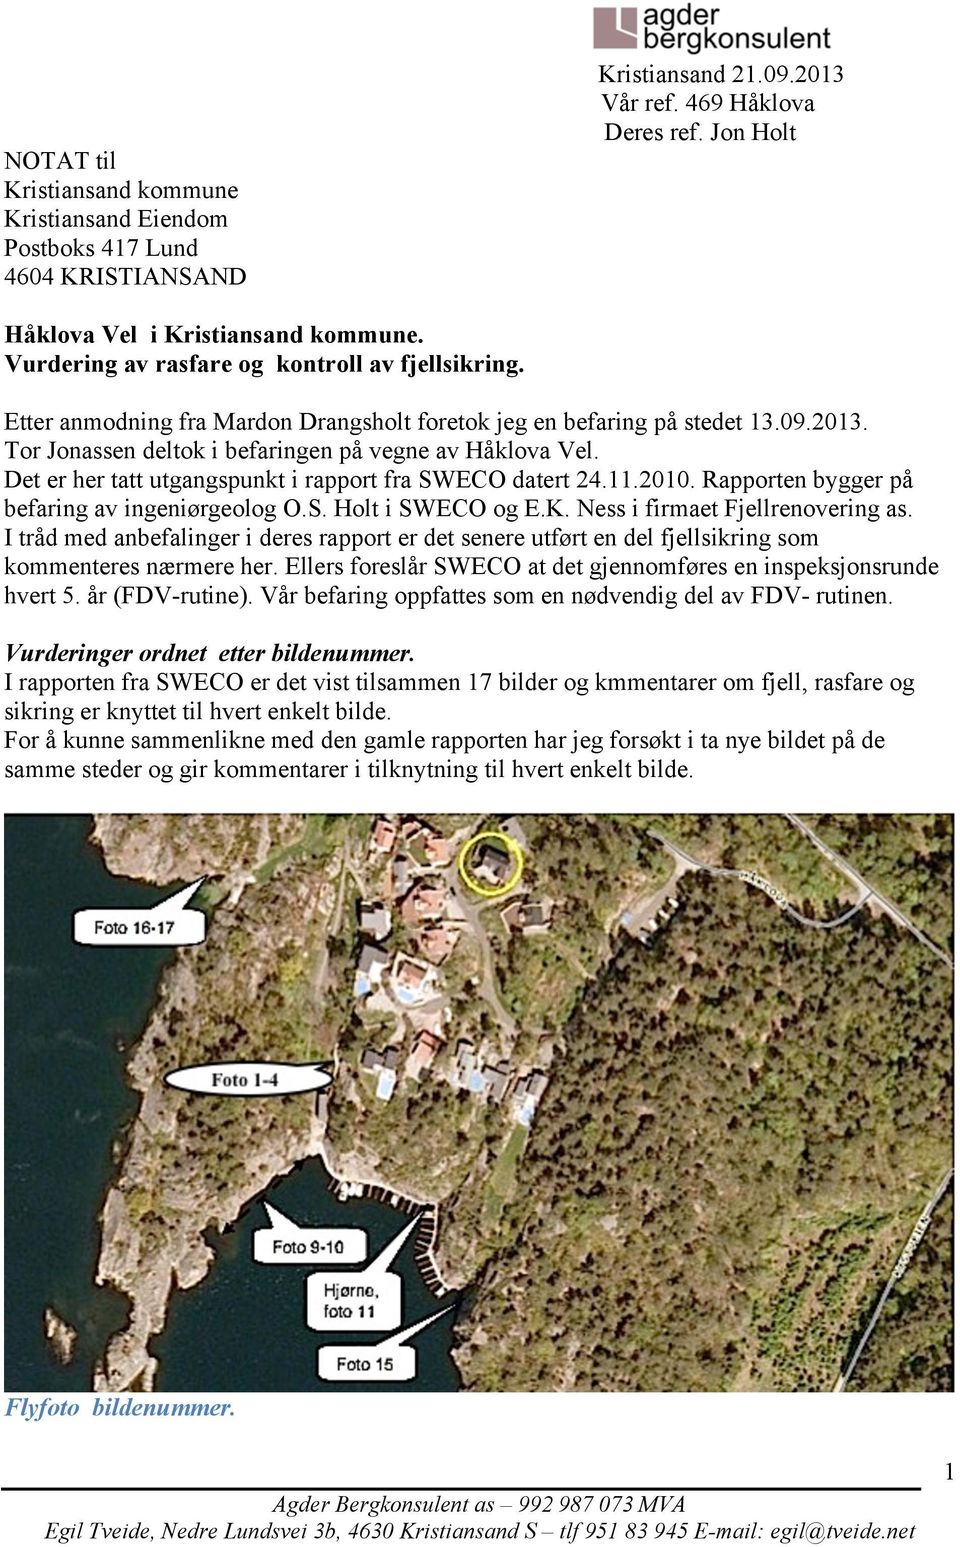 Det er her tatt utgangspunkt i rapport fra SWECO datert 24.11.2010. Rapporten bygger på befaring av ingeniørgeolog O.S. Holt i SWECO og E.K. Ness i firmaet Fjellrenovering as.